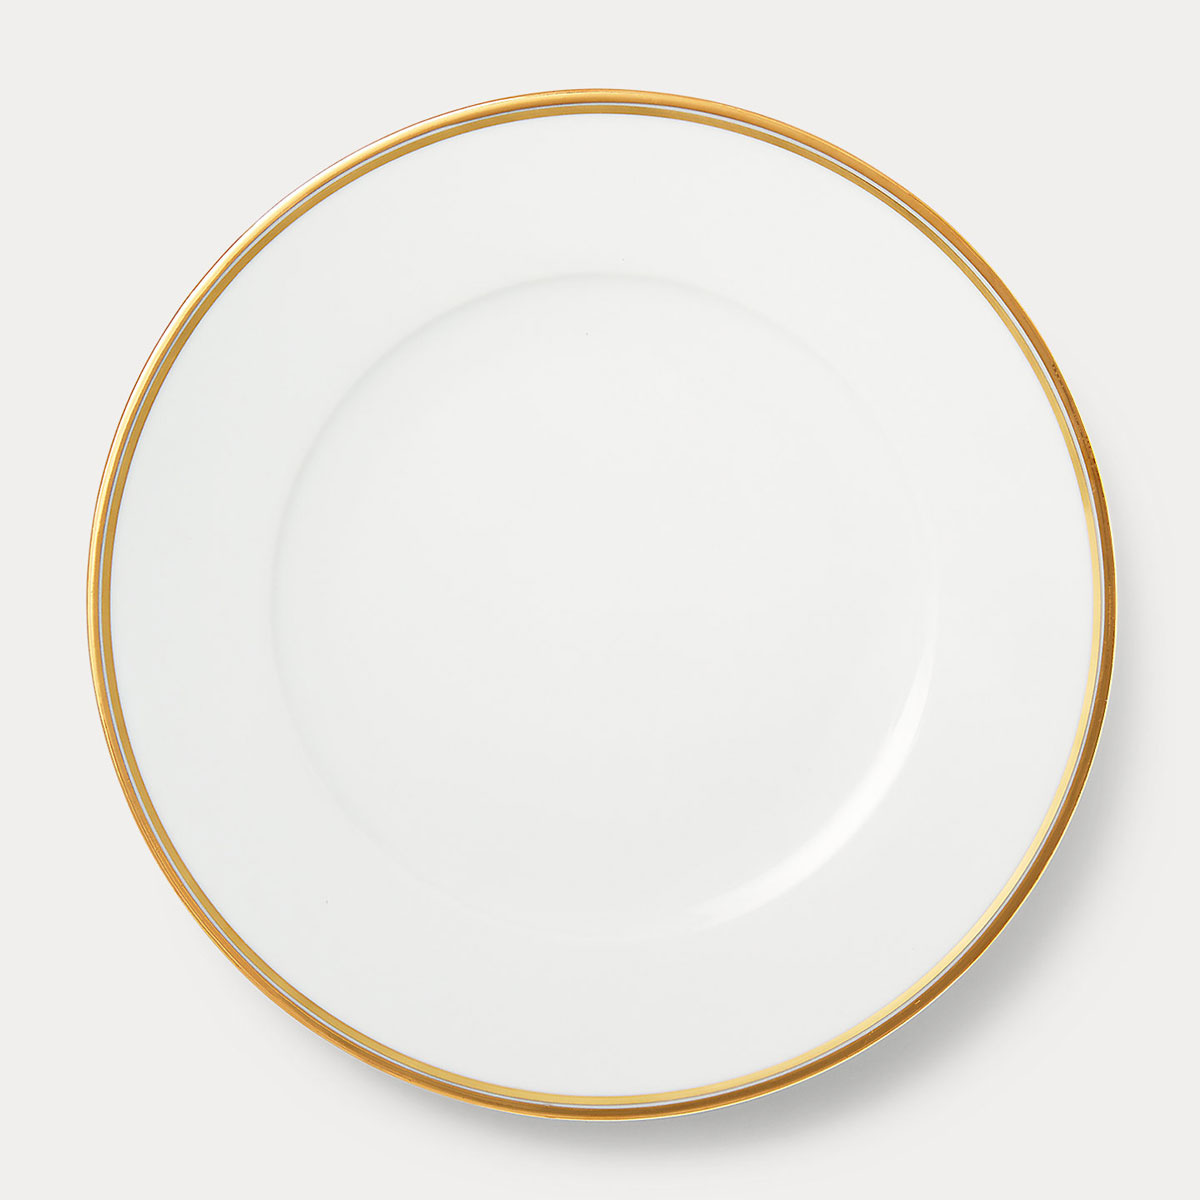 Ralph Lauren Wilshire Dinner Plate, Gold And White